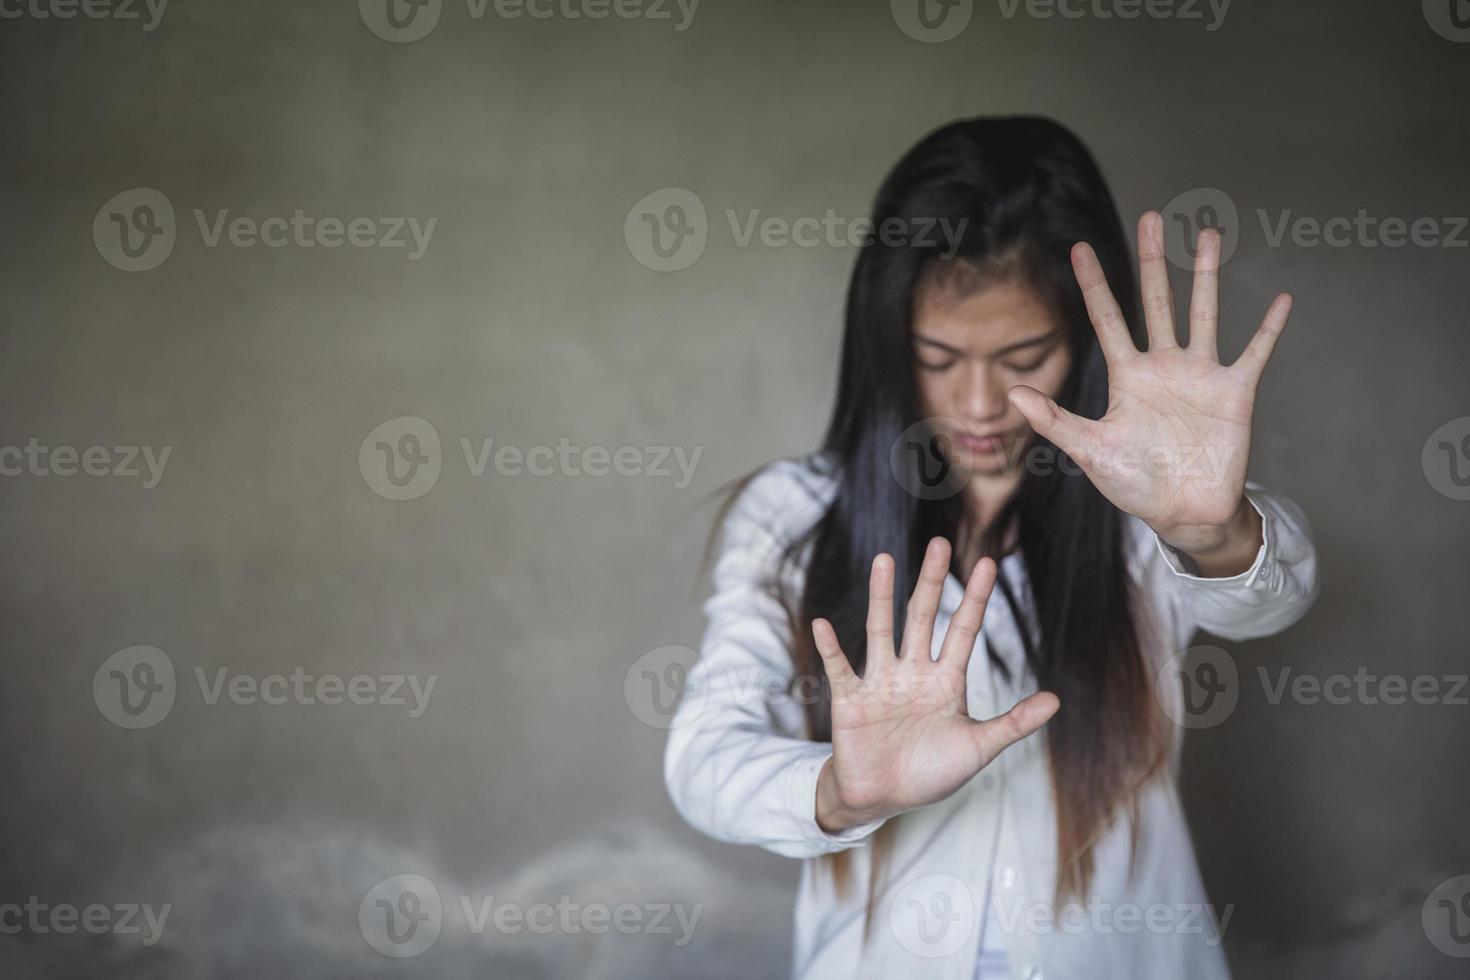 bondage de femme dans l'angle d'un bâtiment abandonné, mettre fin à la violence et aux abus sexuels envers les femmes, journée internationale de la femme photo